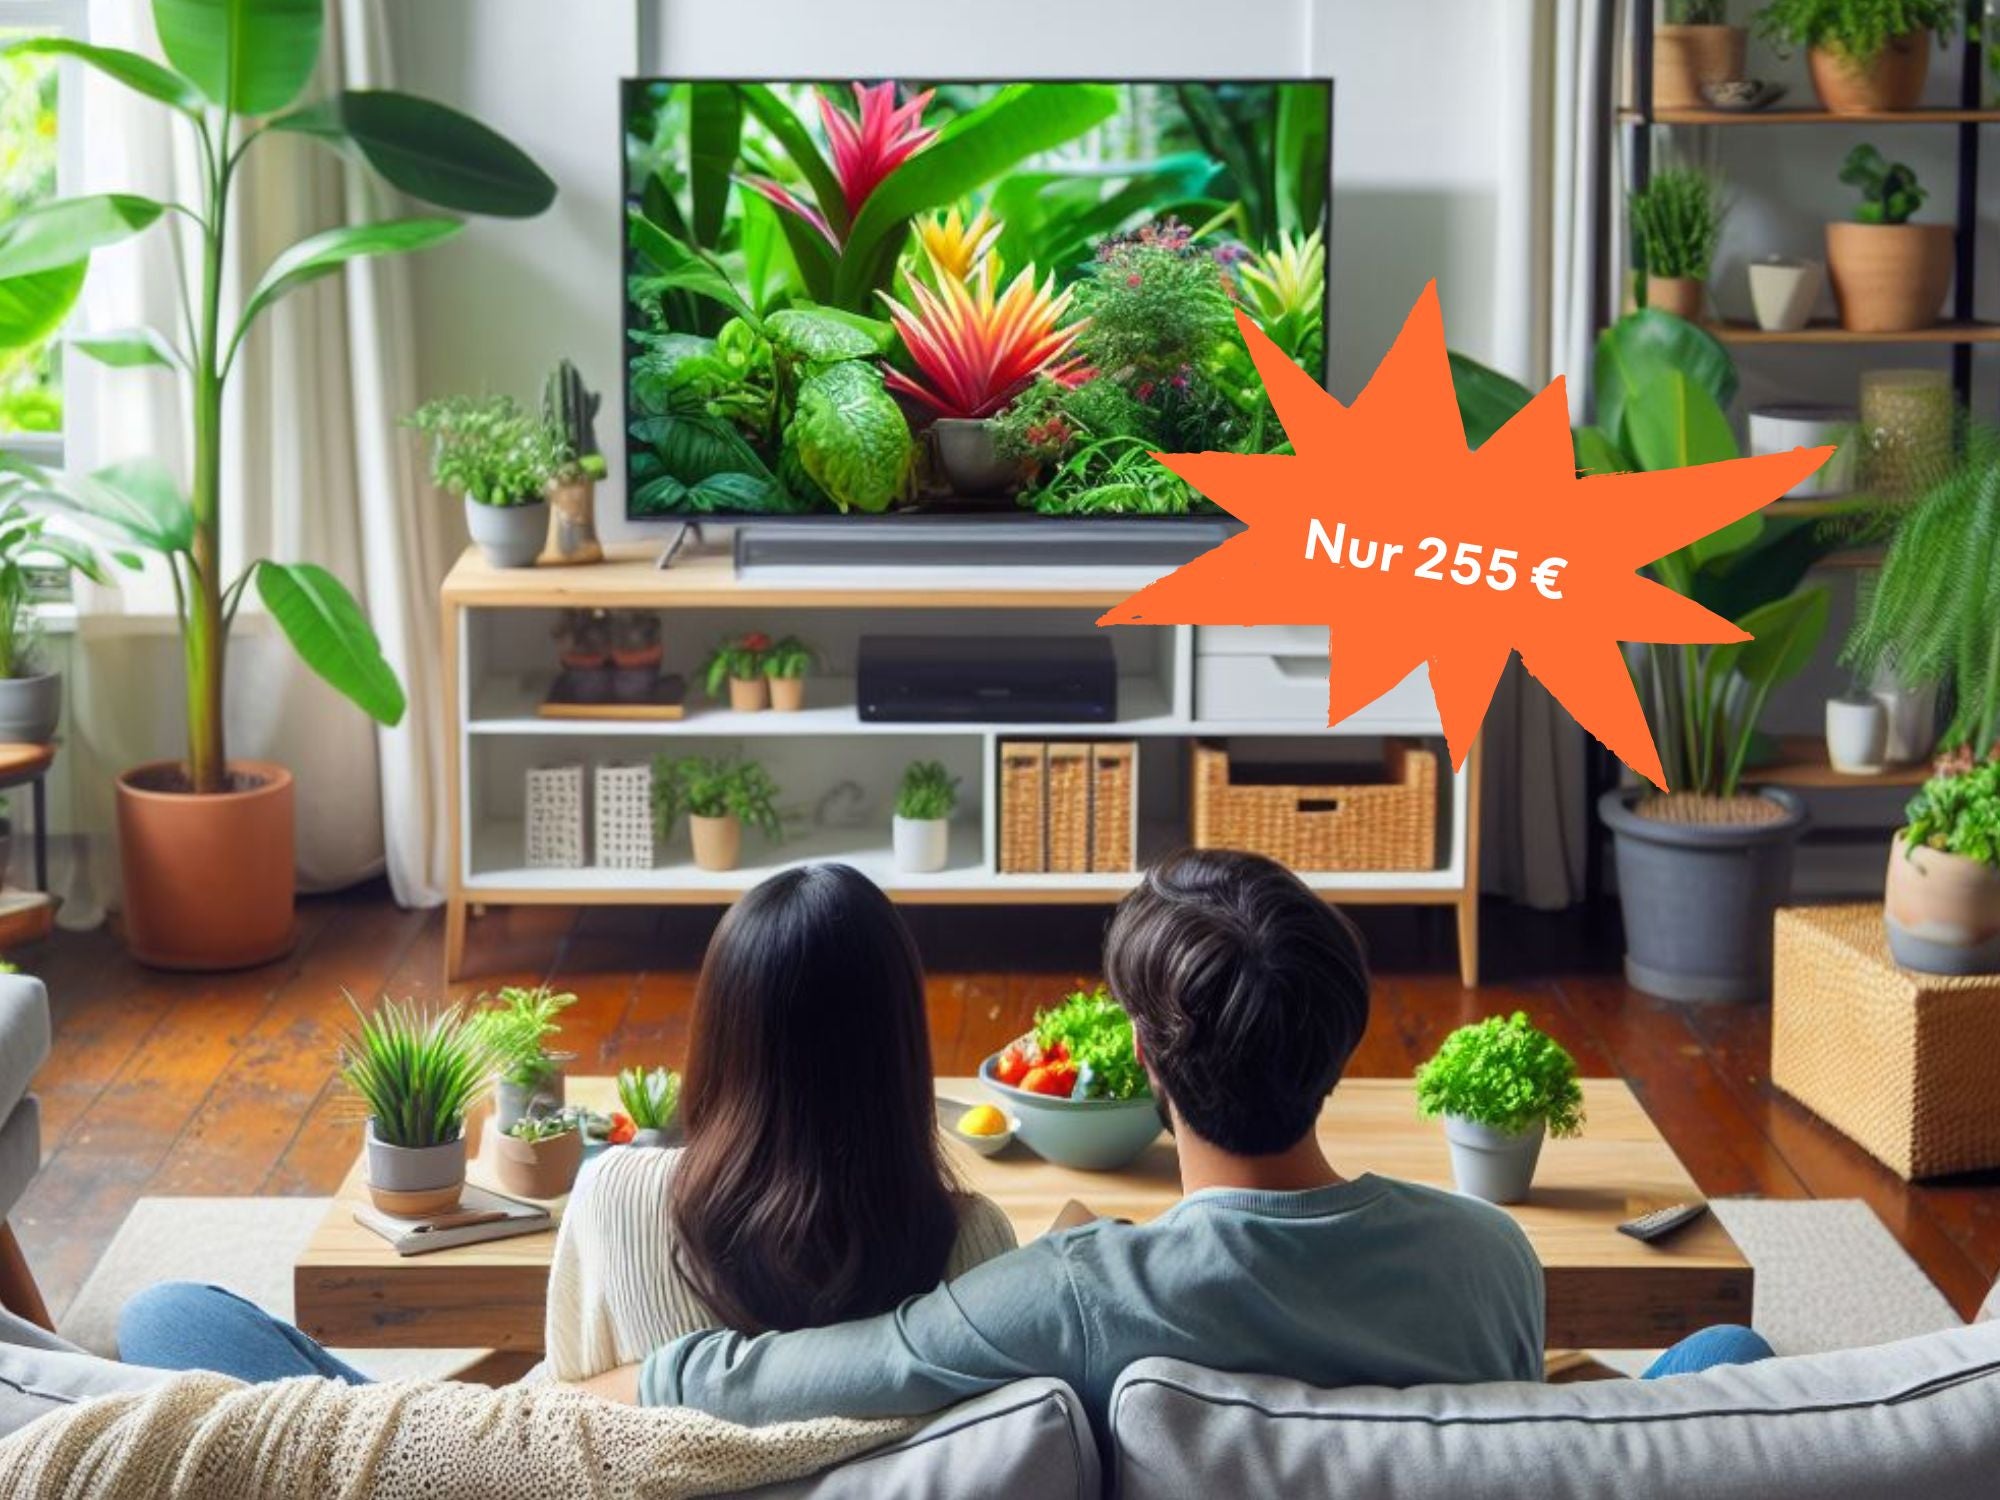 Völlig irre - MediaMarkt will nur 255 Euro für diesen 4K QLED-TV